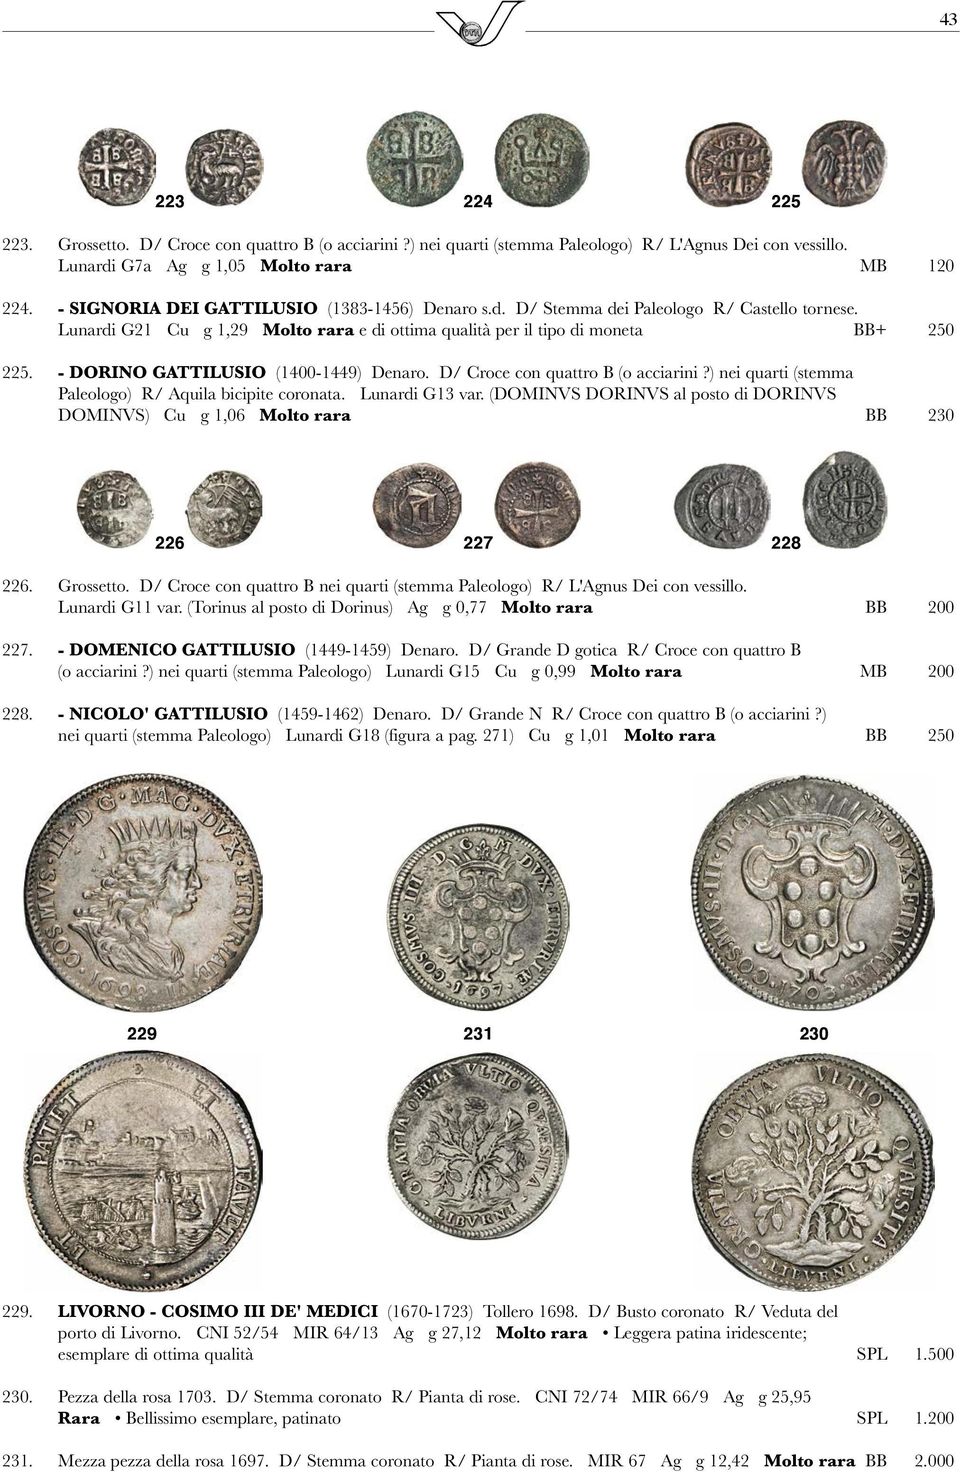 - DORINO GATTILUSIO (1400-1449) Denaro. D/ Croce con quattro B (o acciarini?) nei quarti (stemma Paleologo) R/ Aquila bicipite coronata. Lunardi G13 var.